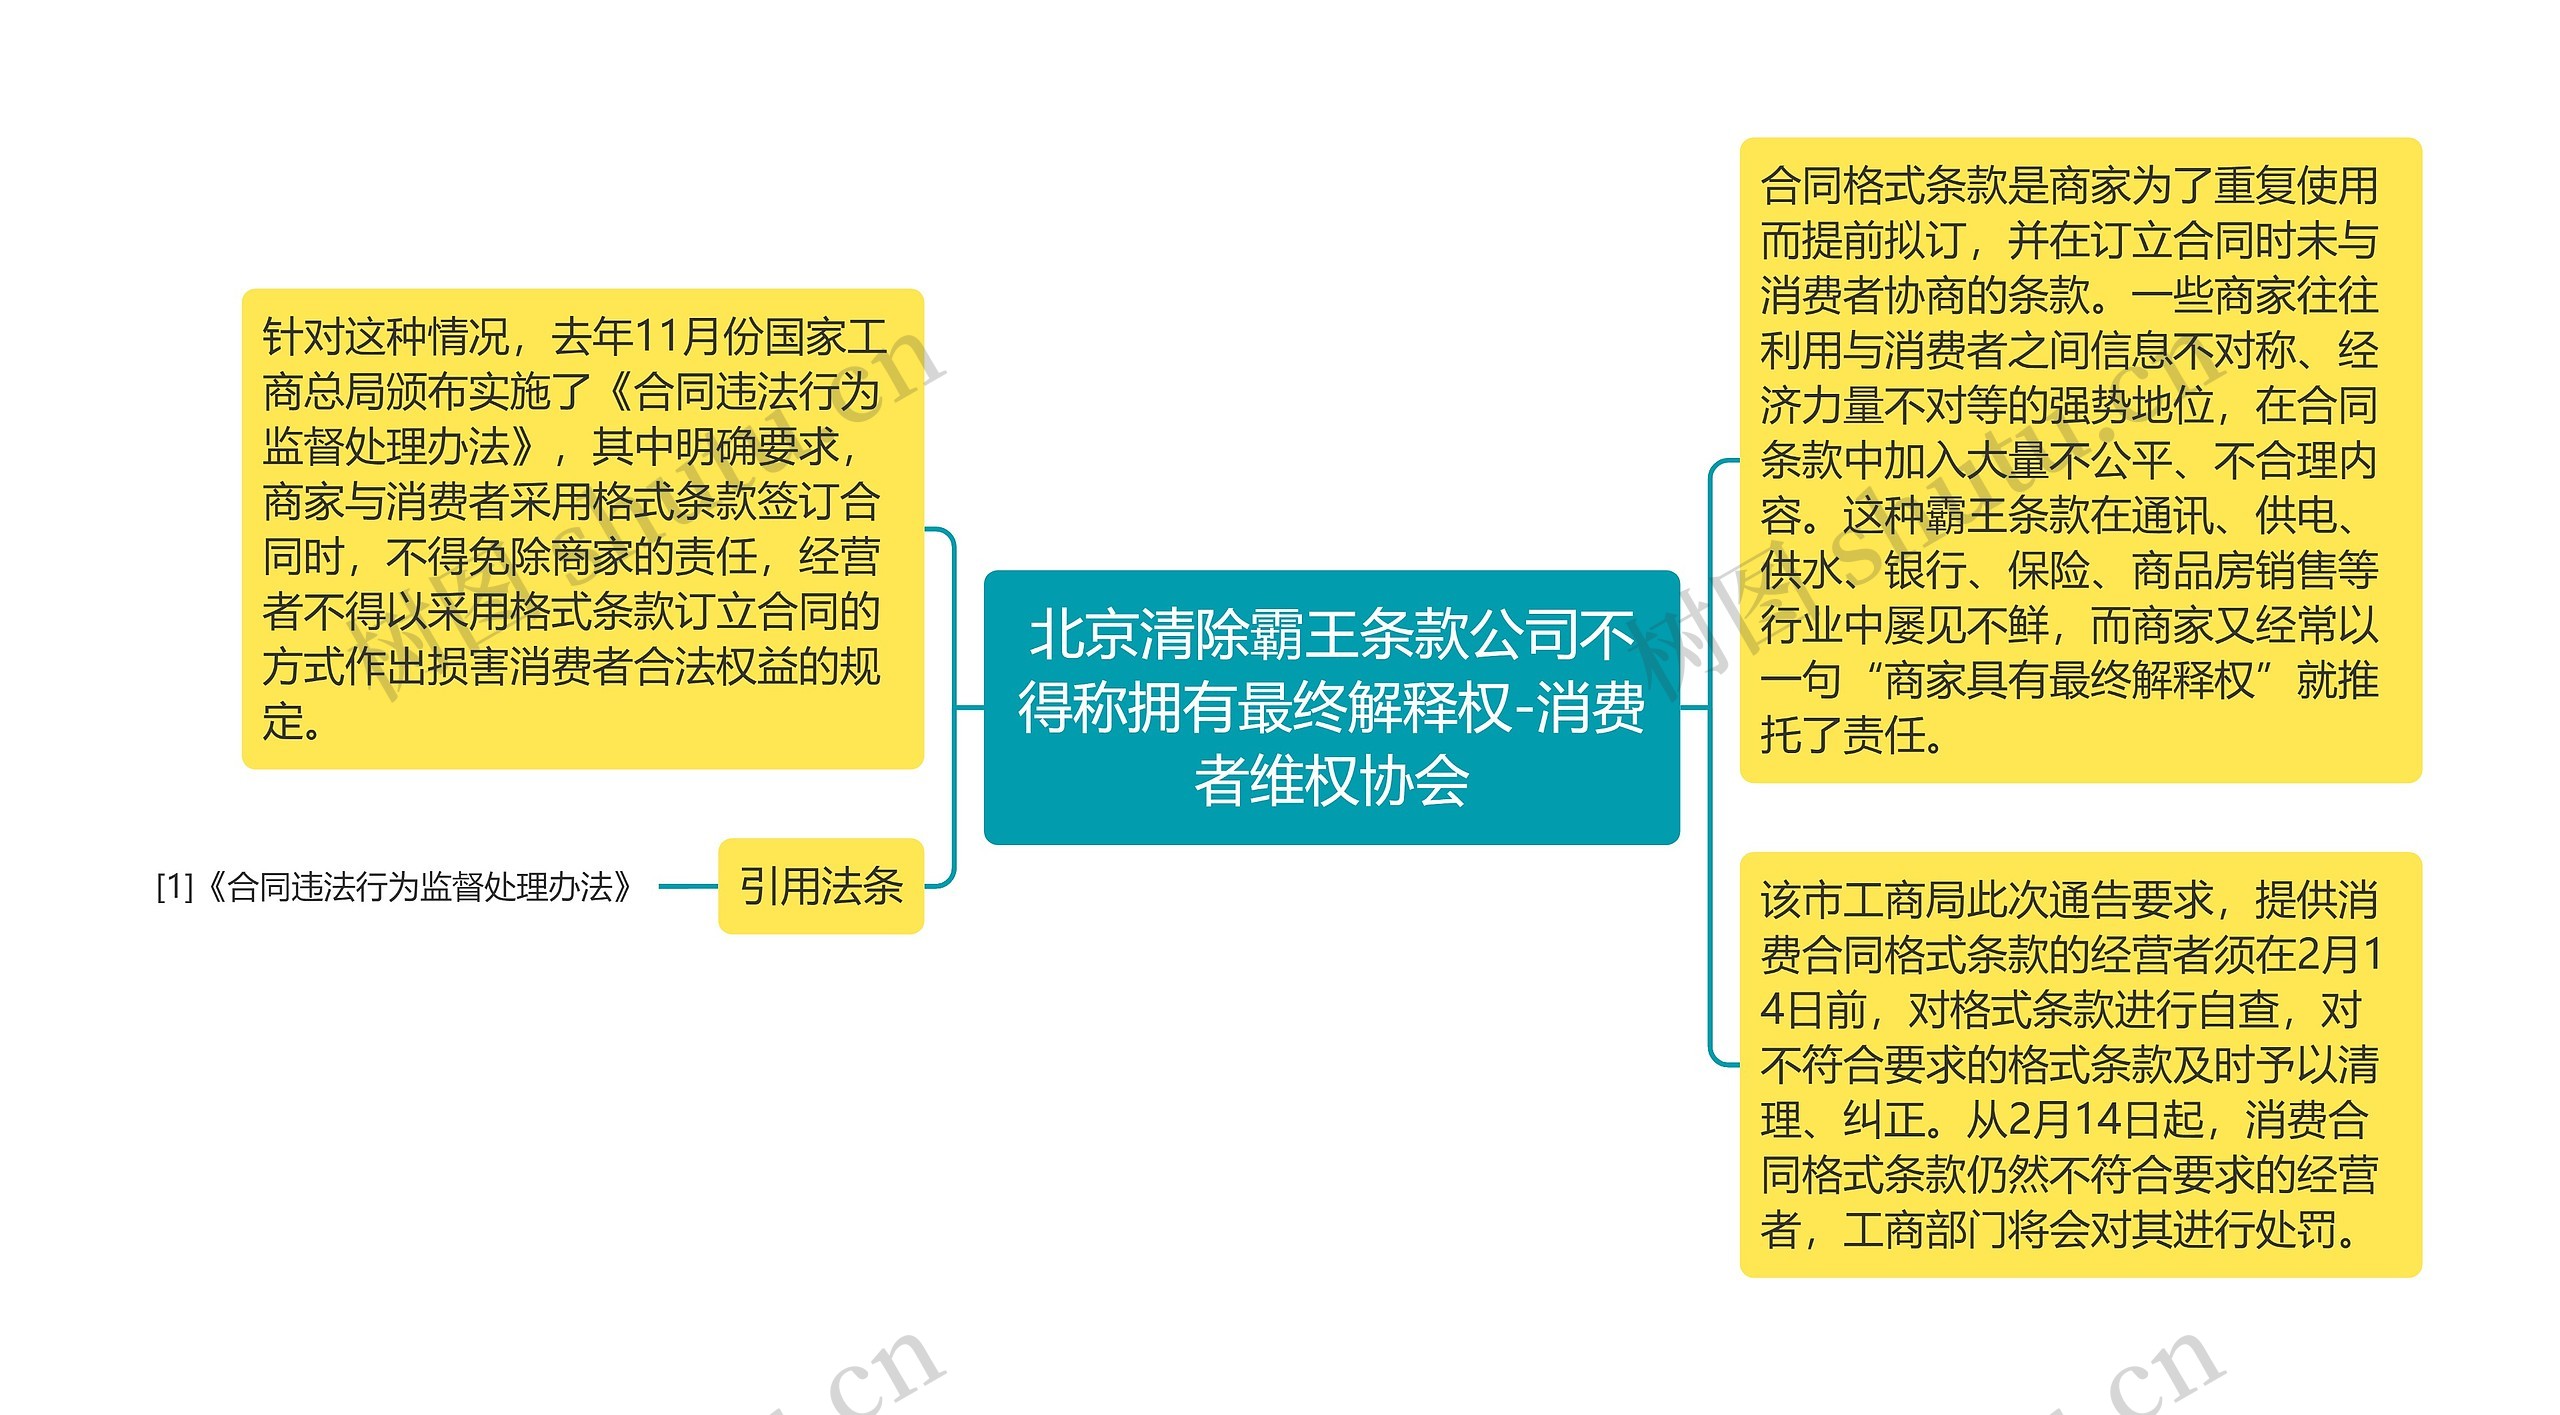 北京清除霸王条款公司不得称拥有最终解释权-消费者维权协会思维导图